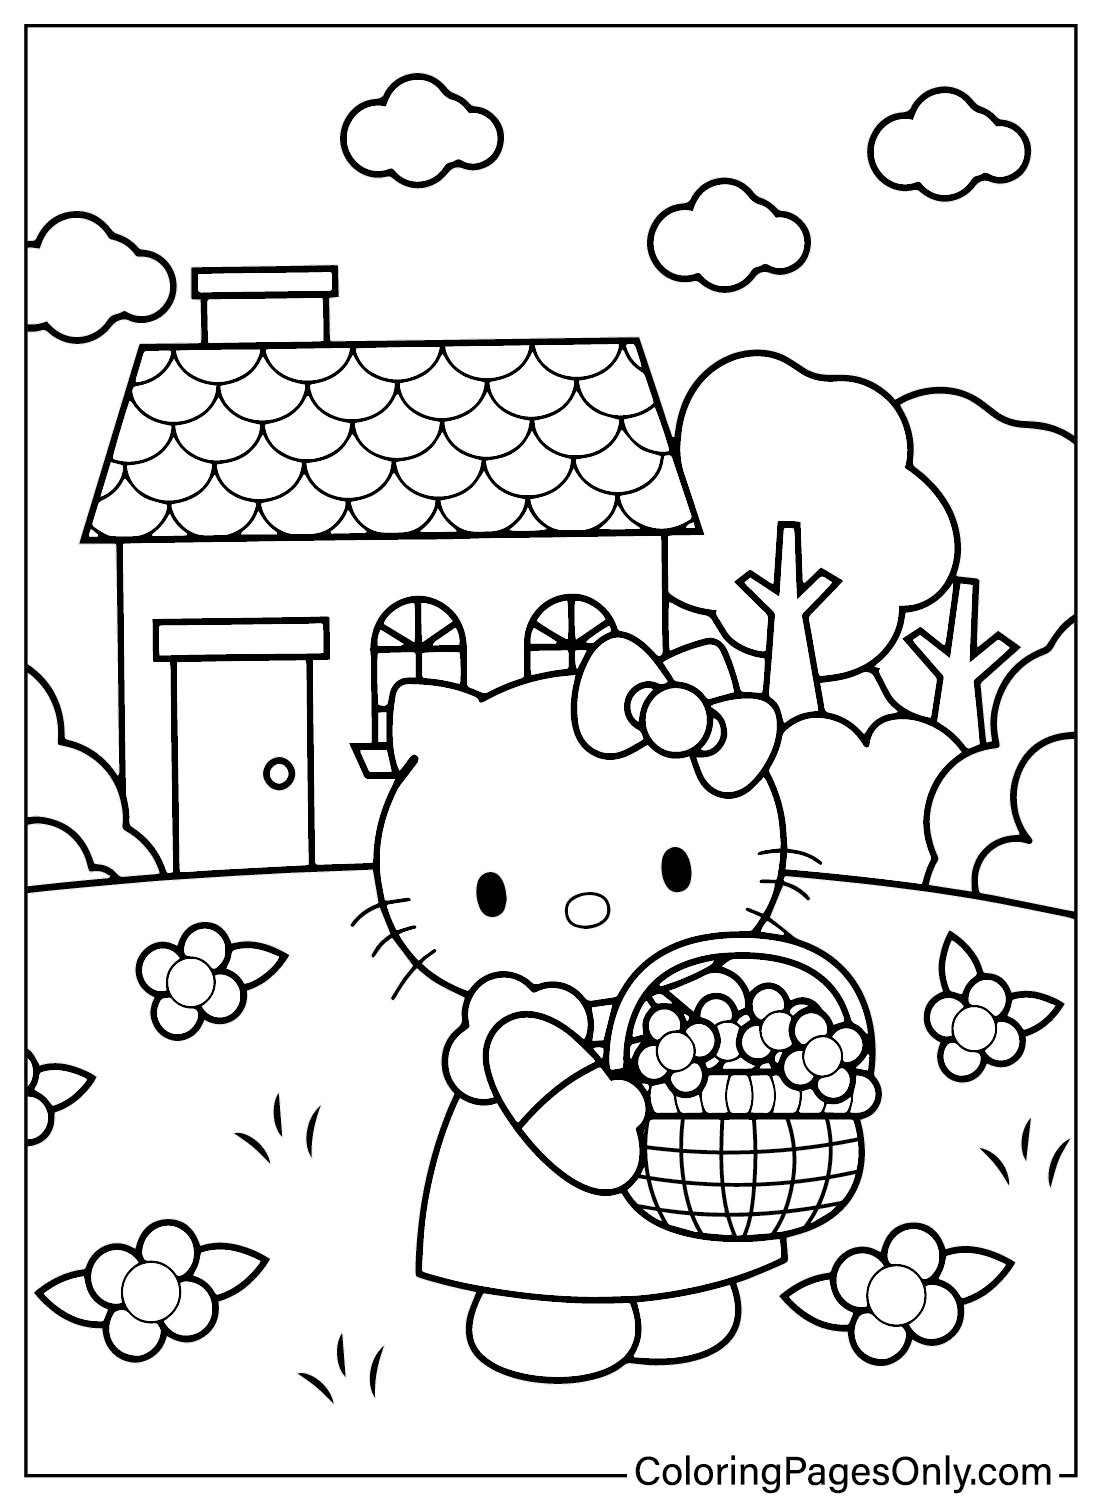 Página para colorear de Hello Kitty de Hello Kitty